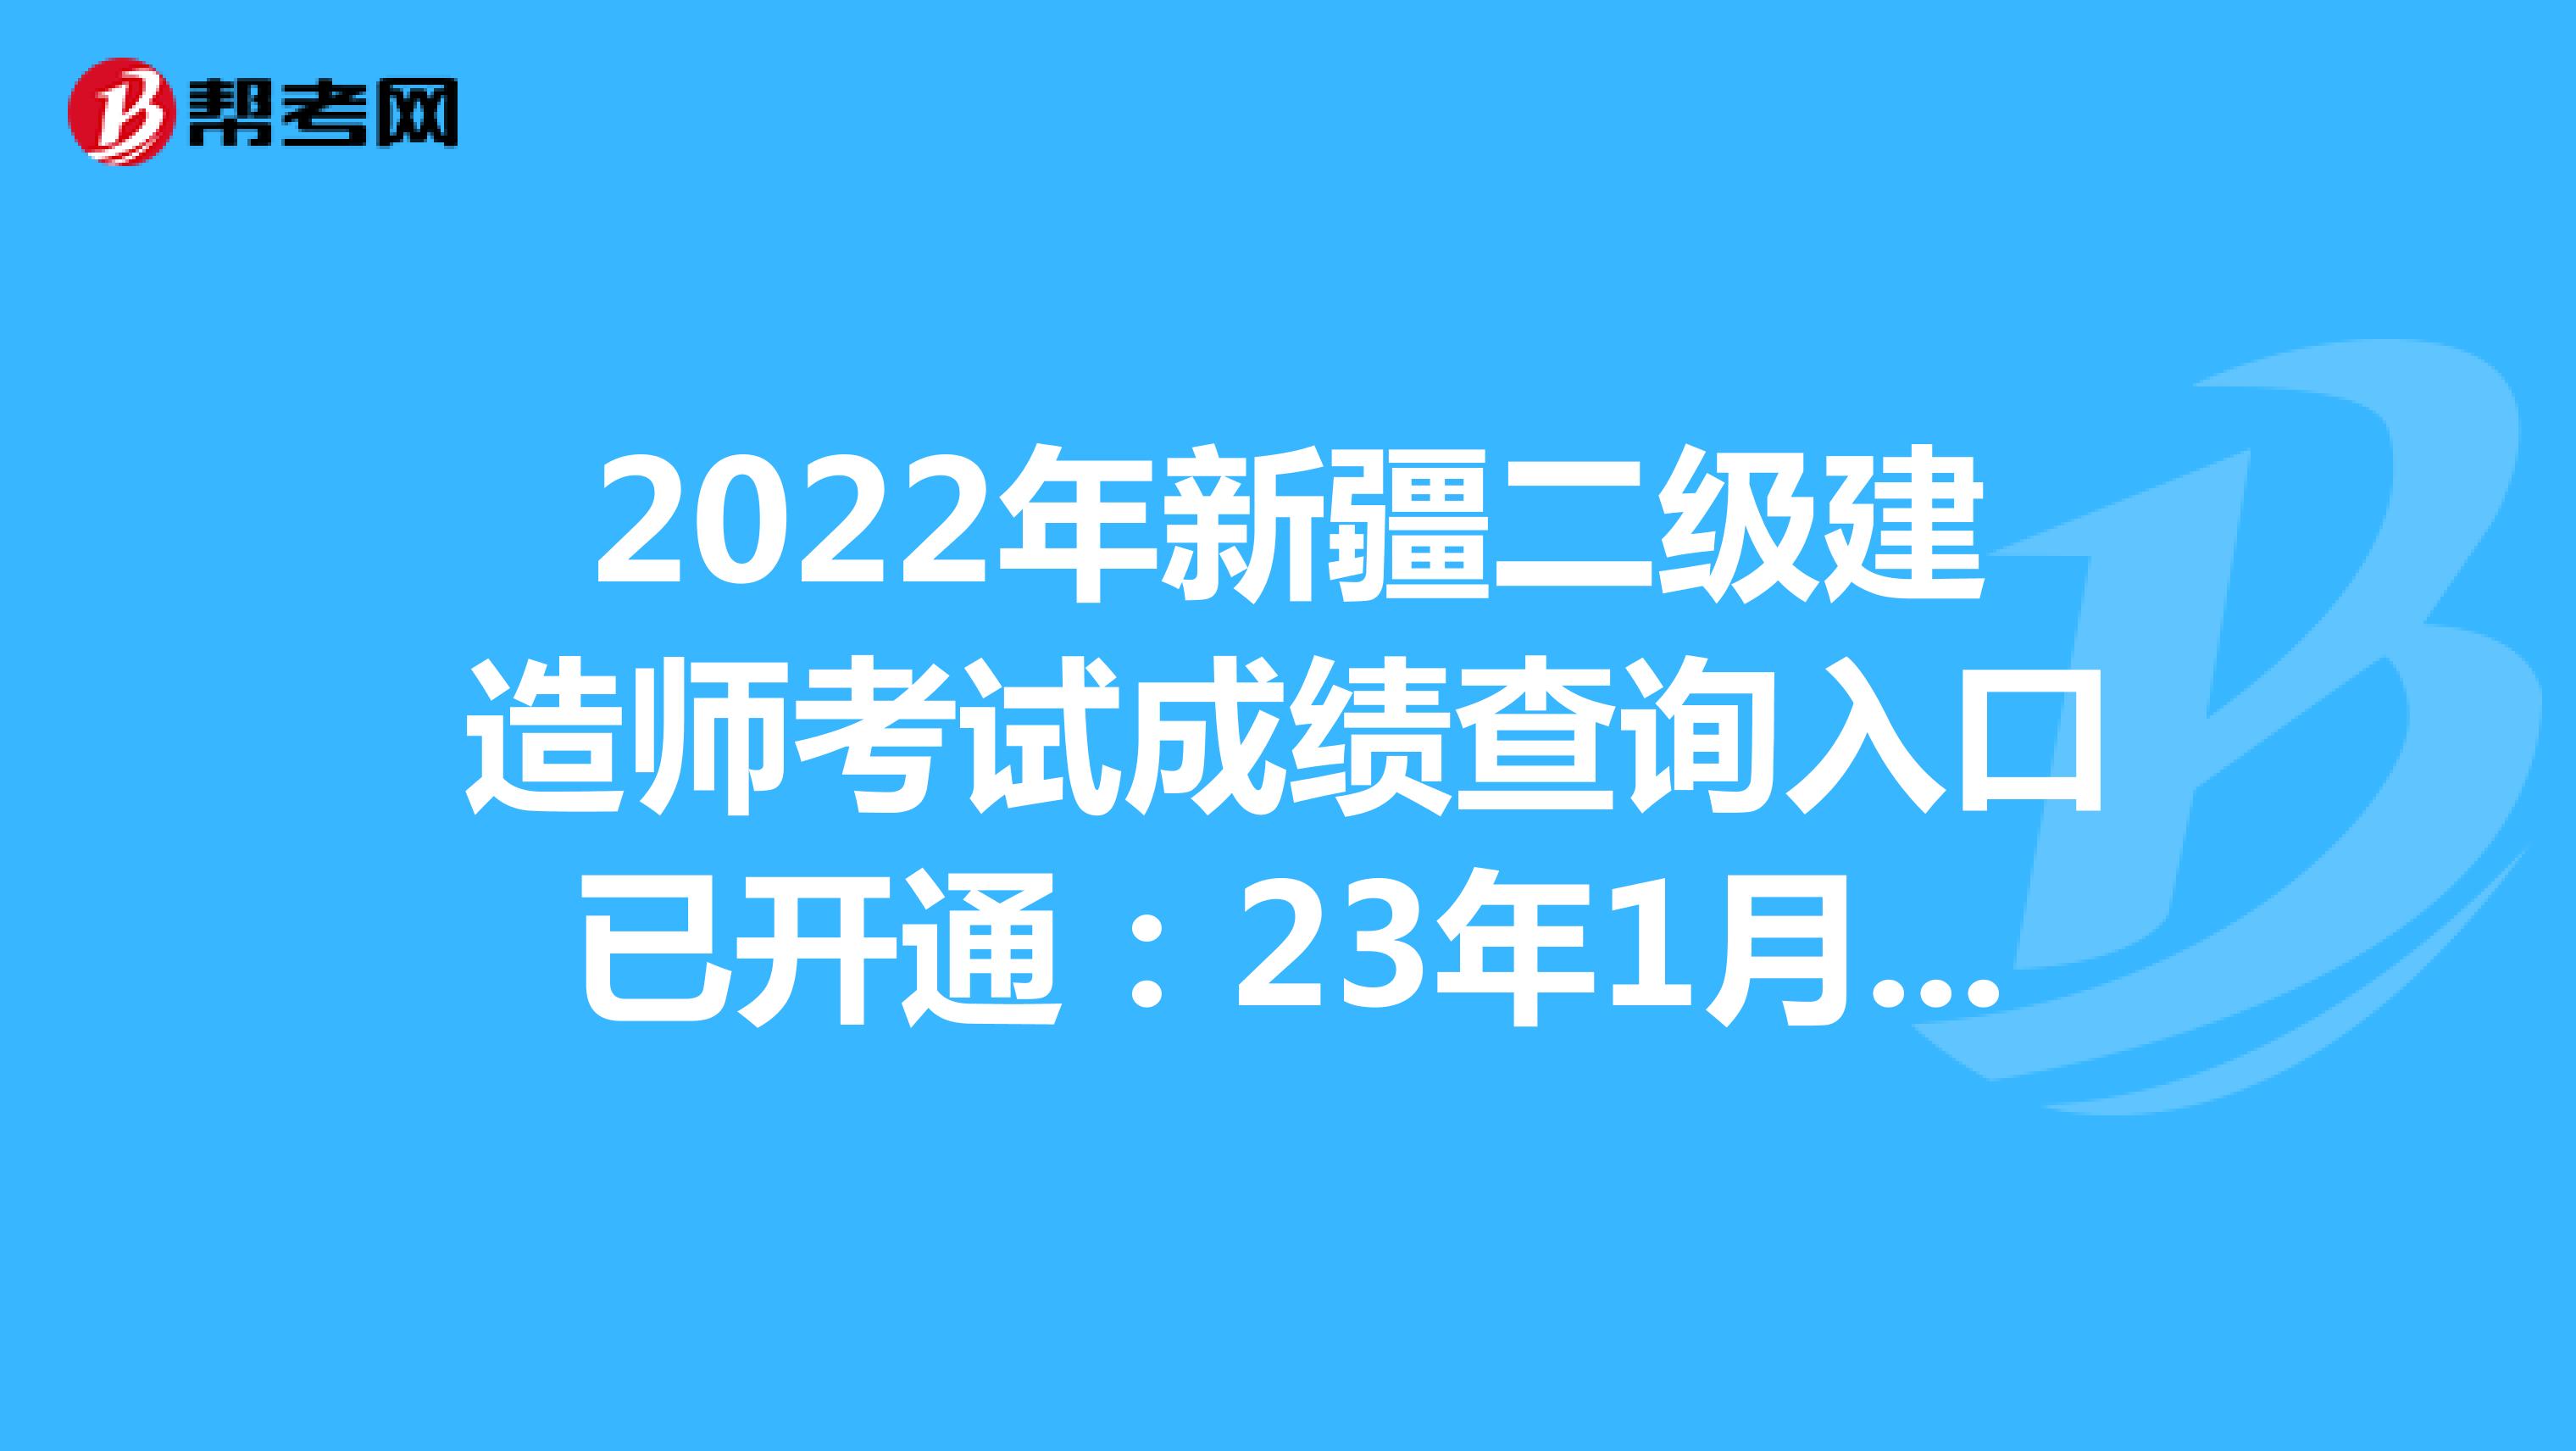  2022年新疆二级建造师考试成绩查询入口已开通：23年1月12日